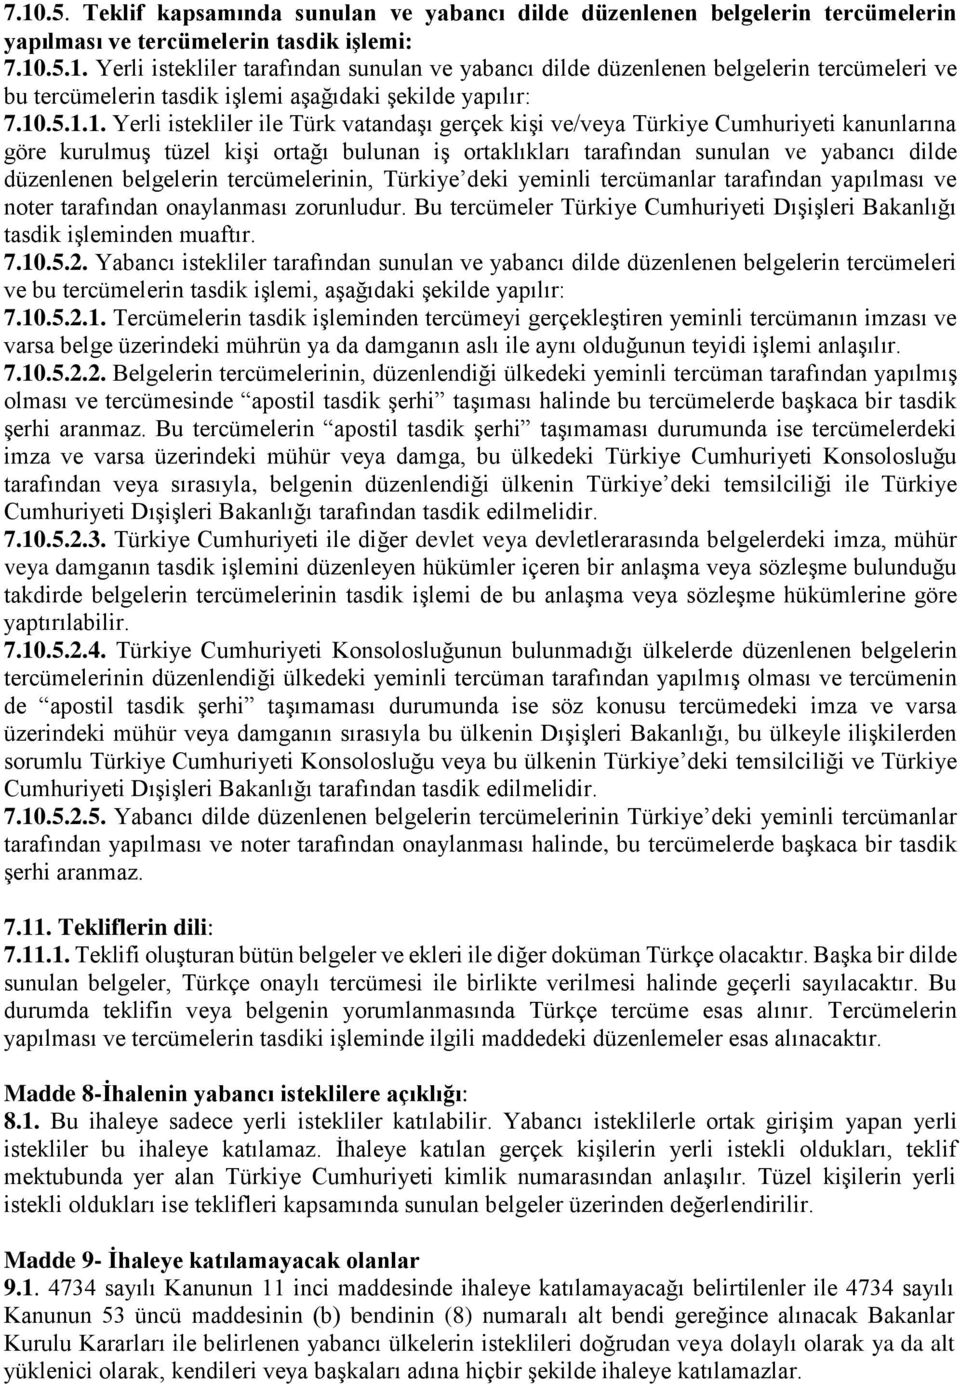 düzenlenen belgelerin tercümelerinin, Türkiye deki yeminli tercümanlar tarafından yapılması ve noter tarafından onaylanması zorunludur.